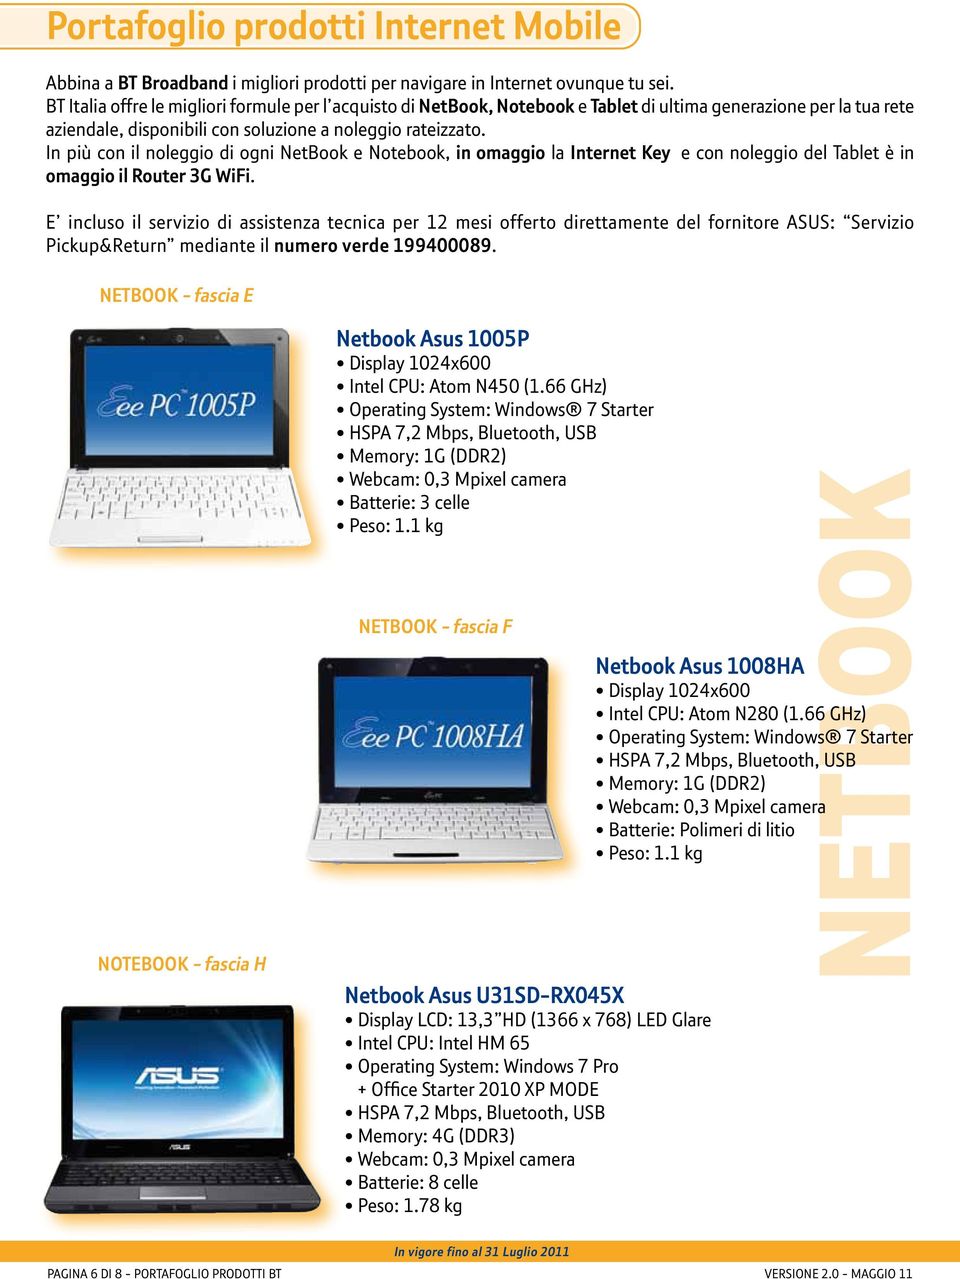 In più con il noleggio di ogni NetBook e Notebook, in omaggio la Internet Key e con noleggio del Tablet è in omaggio il Router 3G WiFi.